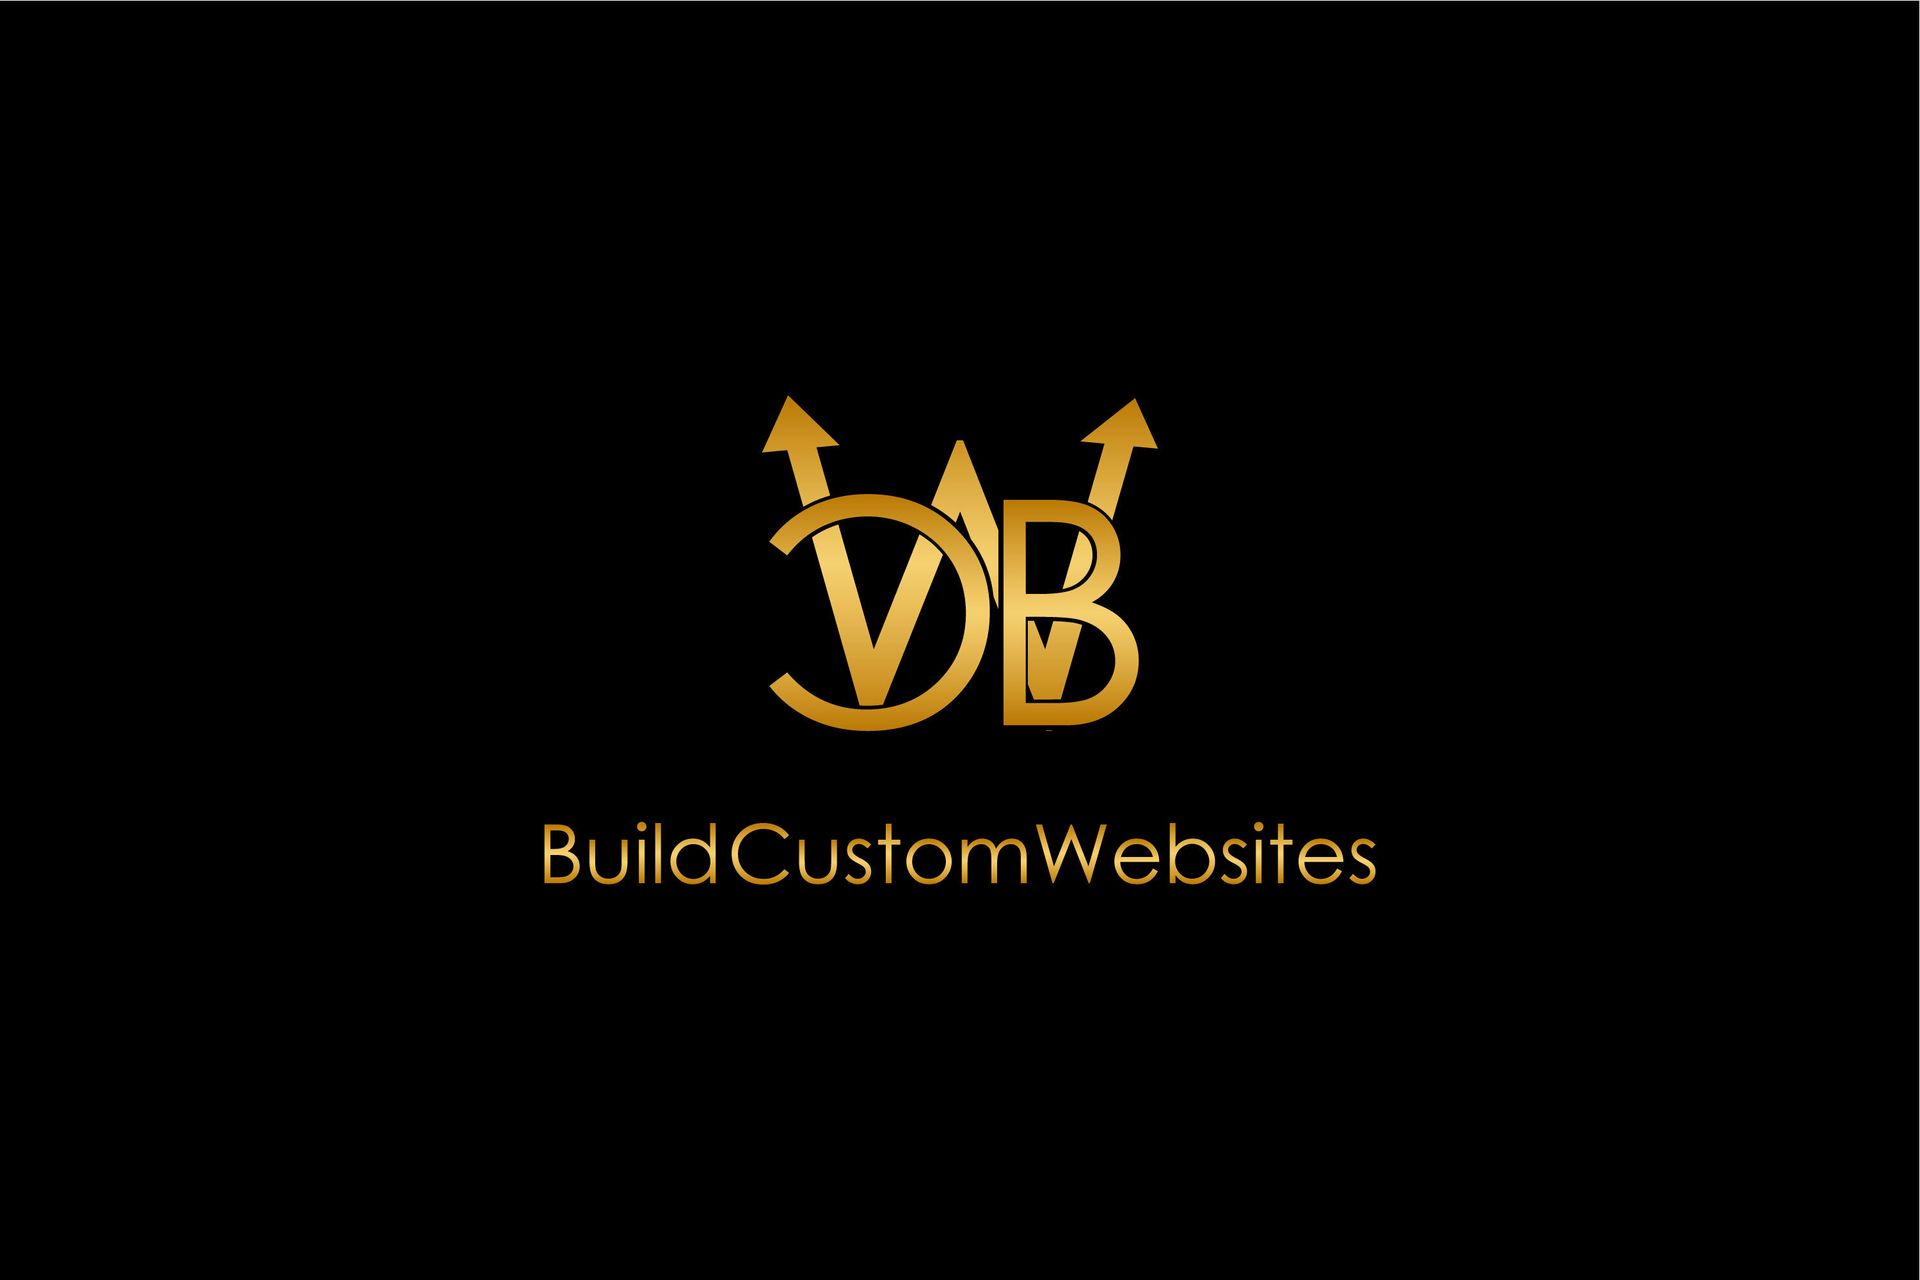 BuildCustomWebsites.com